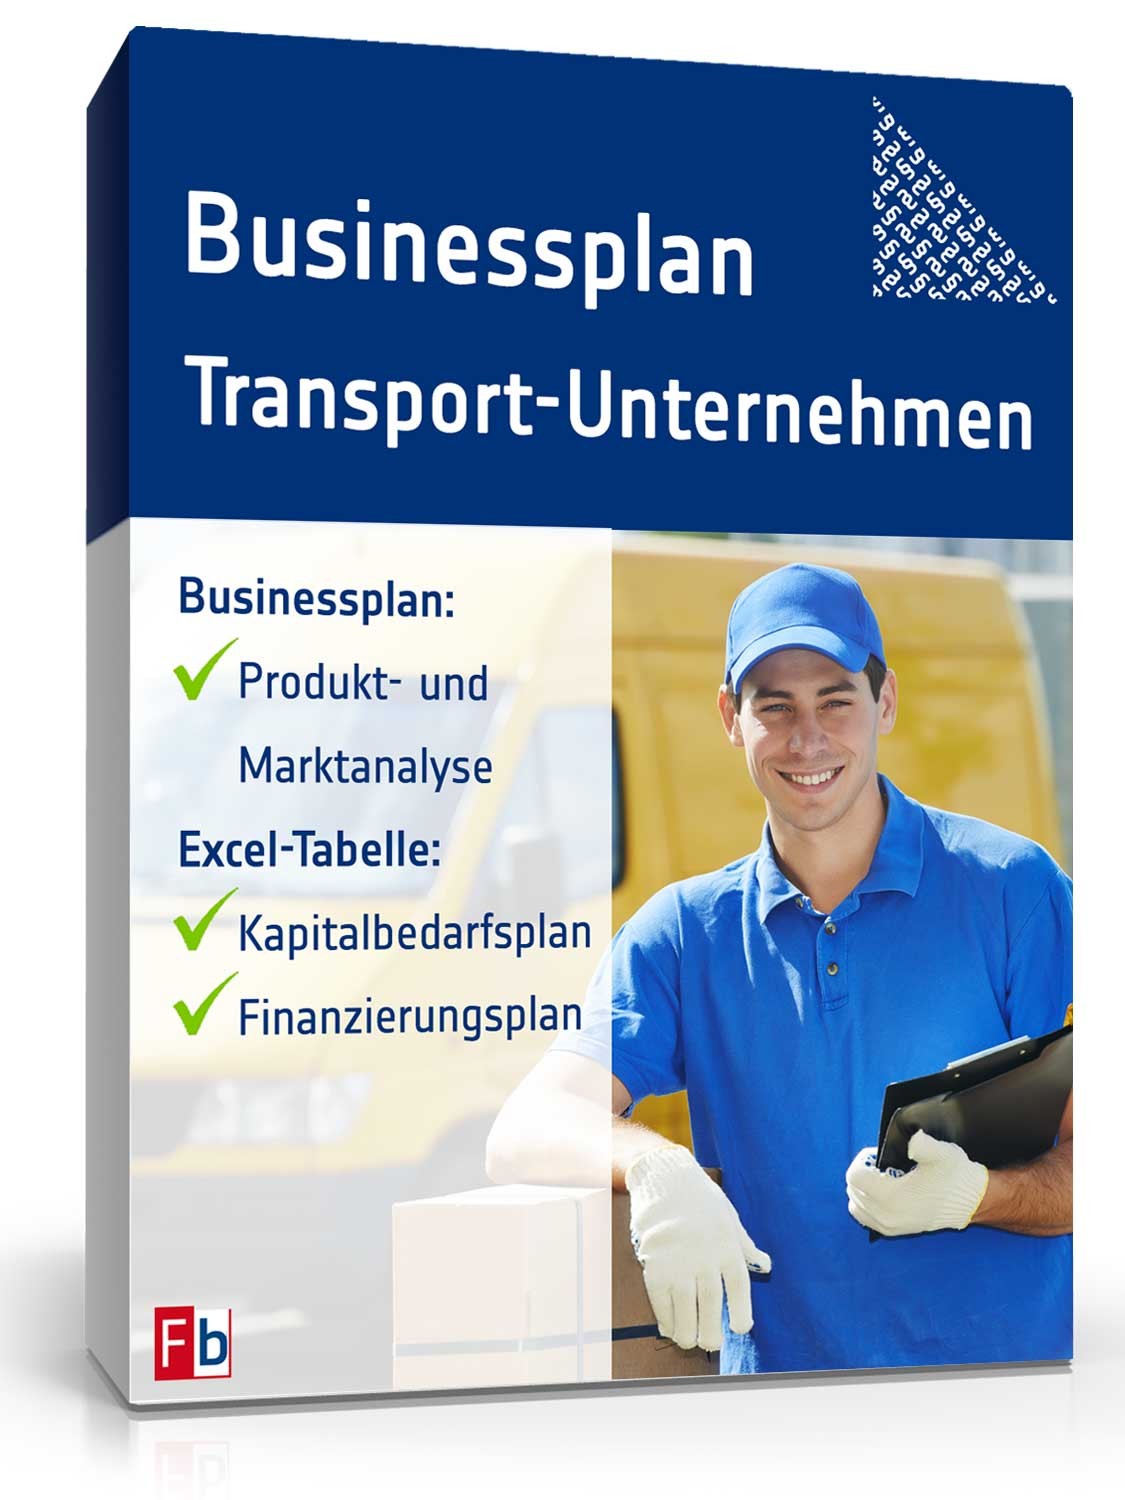 Hauptbild des Produkts: Businessplan Transport-Unternehmen